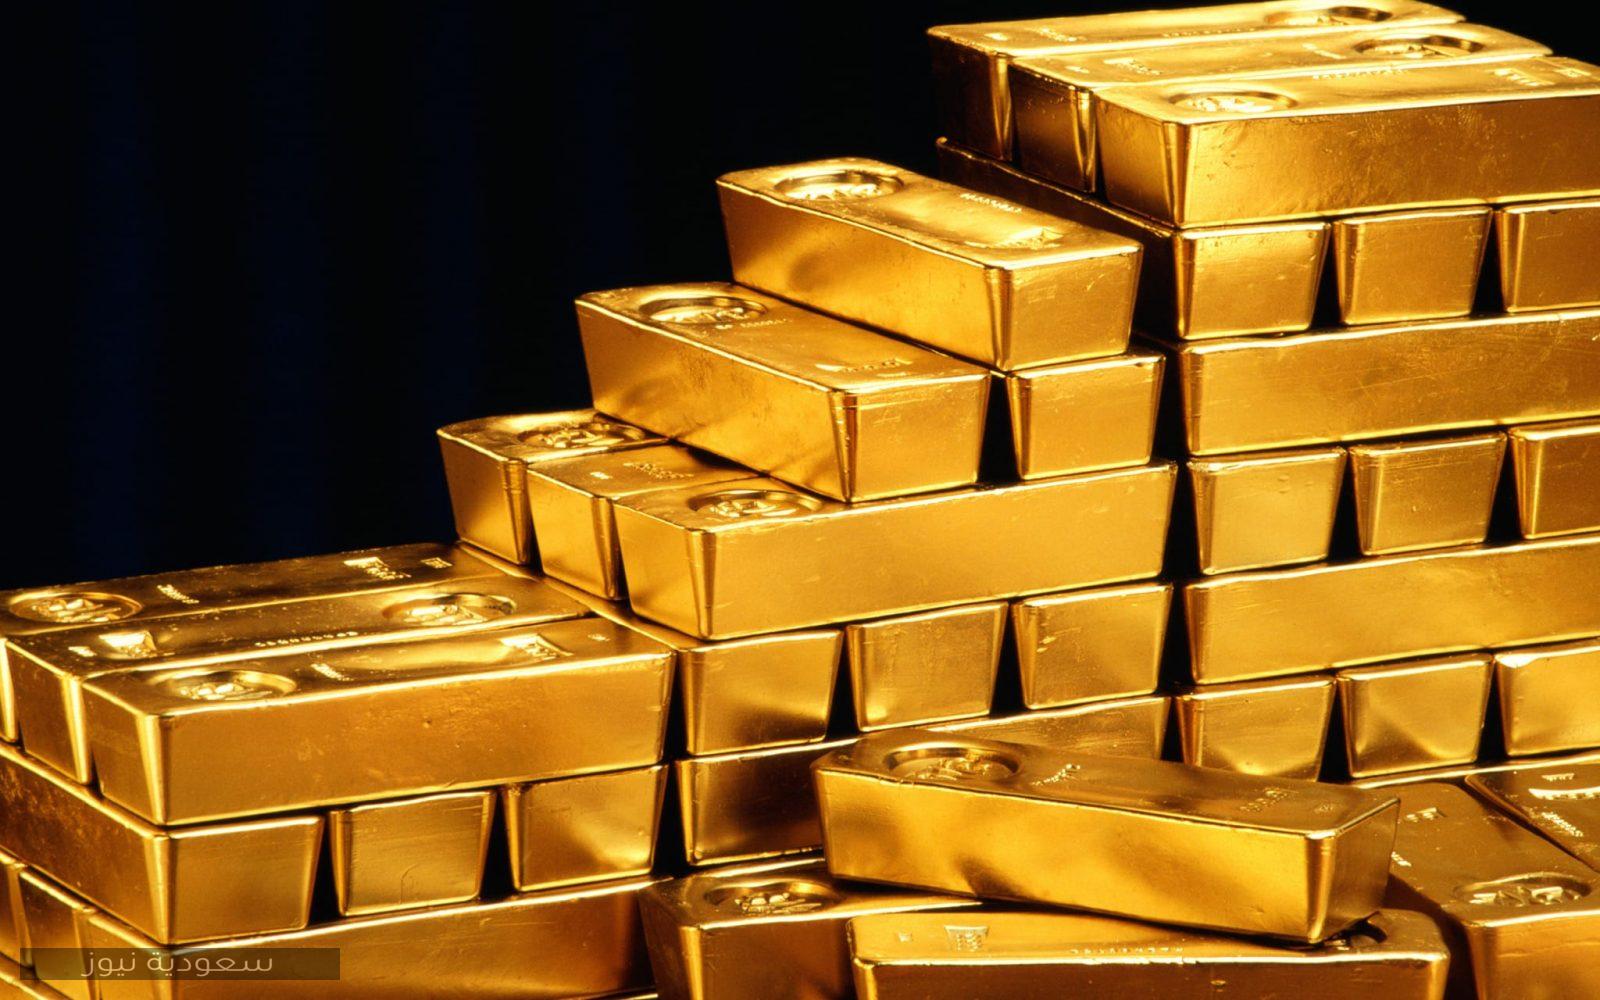 سعر الذهب في السعودية اليوم 1/5/1442 في آخر تحديث على الموقع الرسمي للذهب